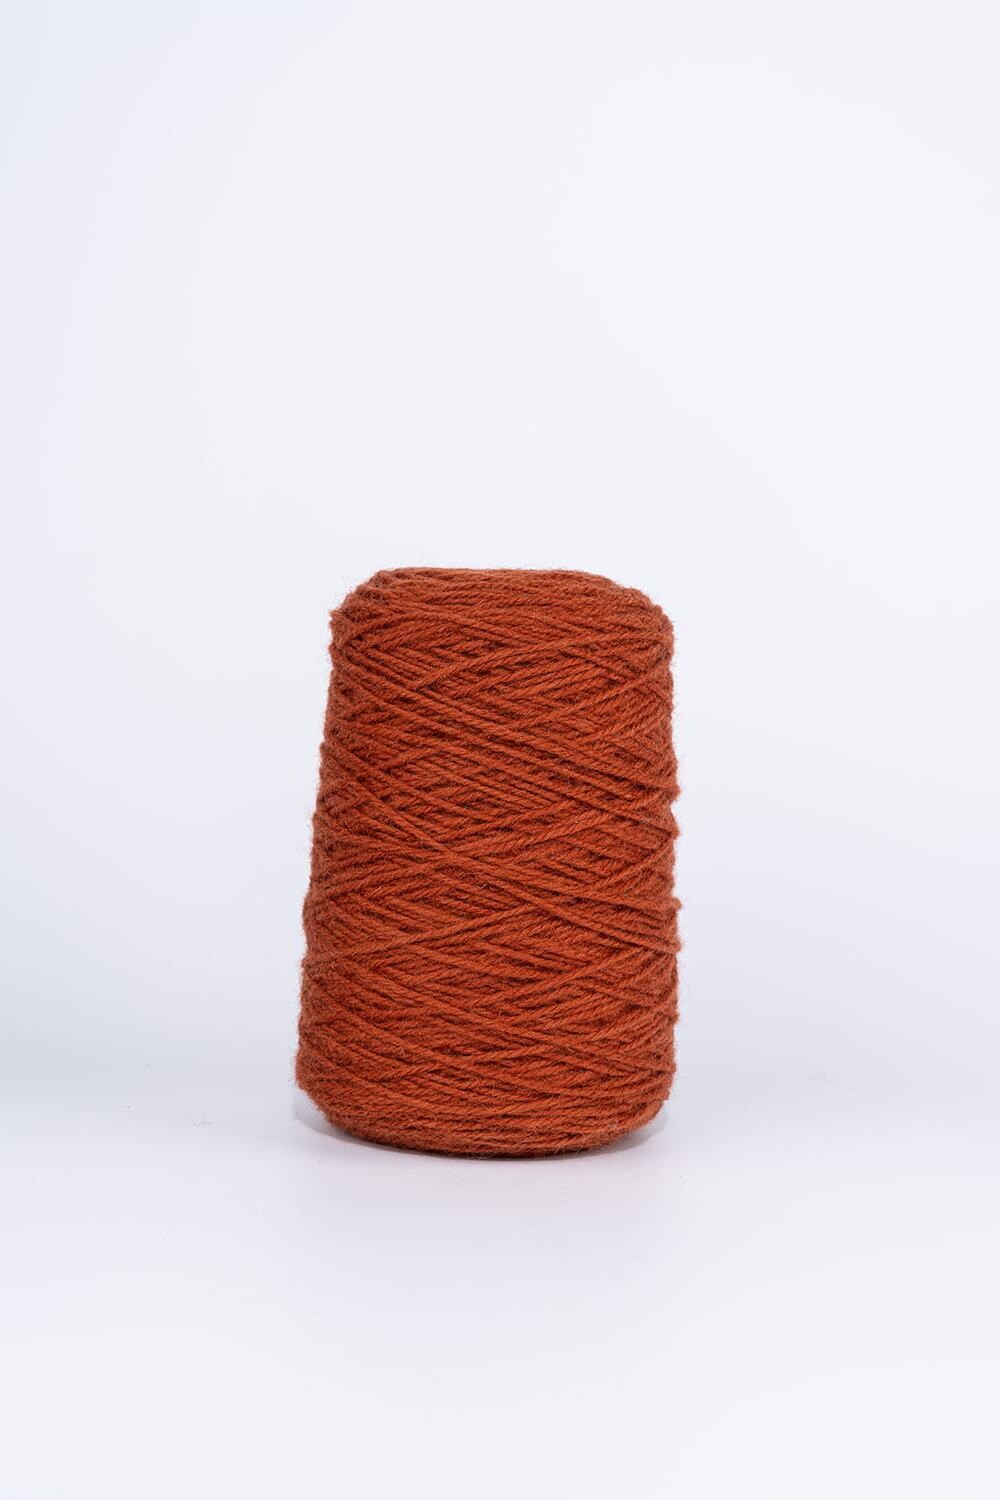 100% Wool Rug Yarn On Cones - Mahogany Brown